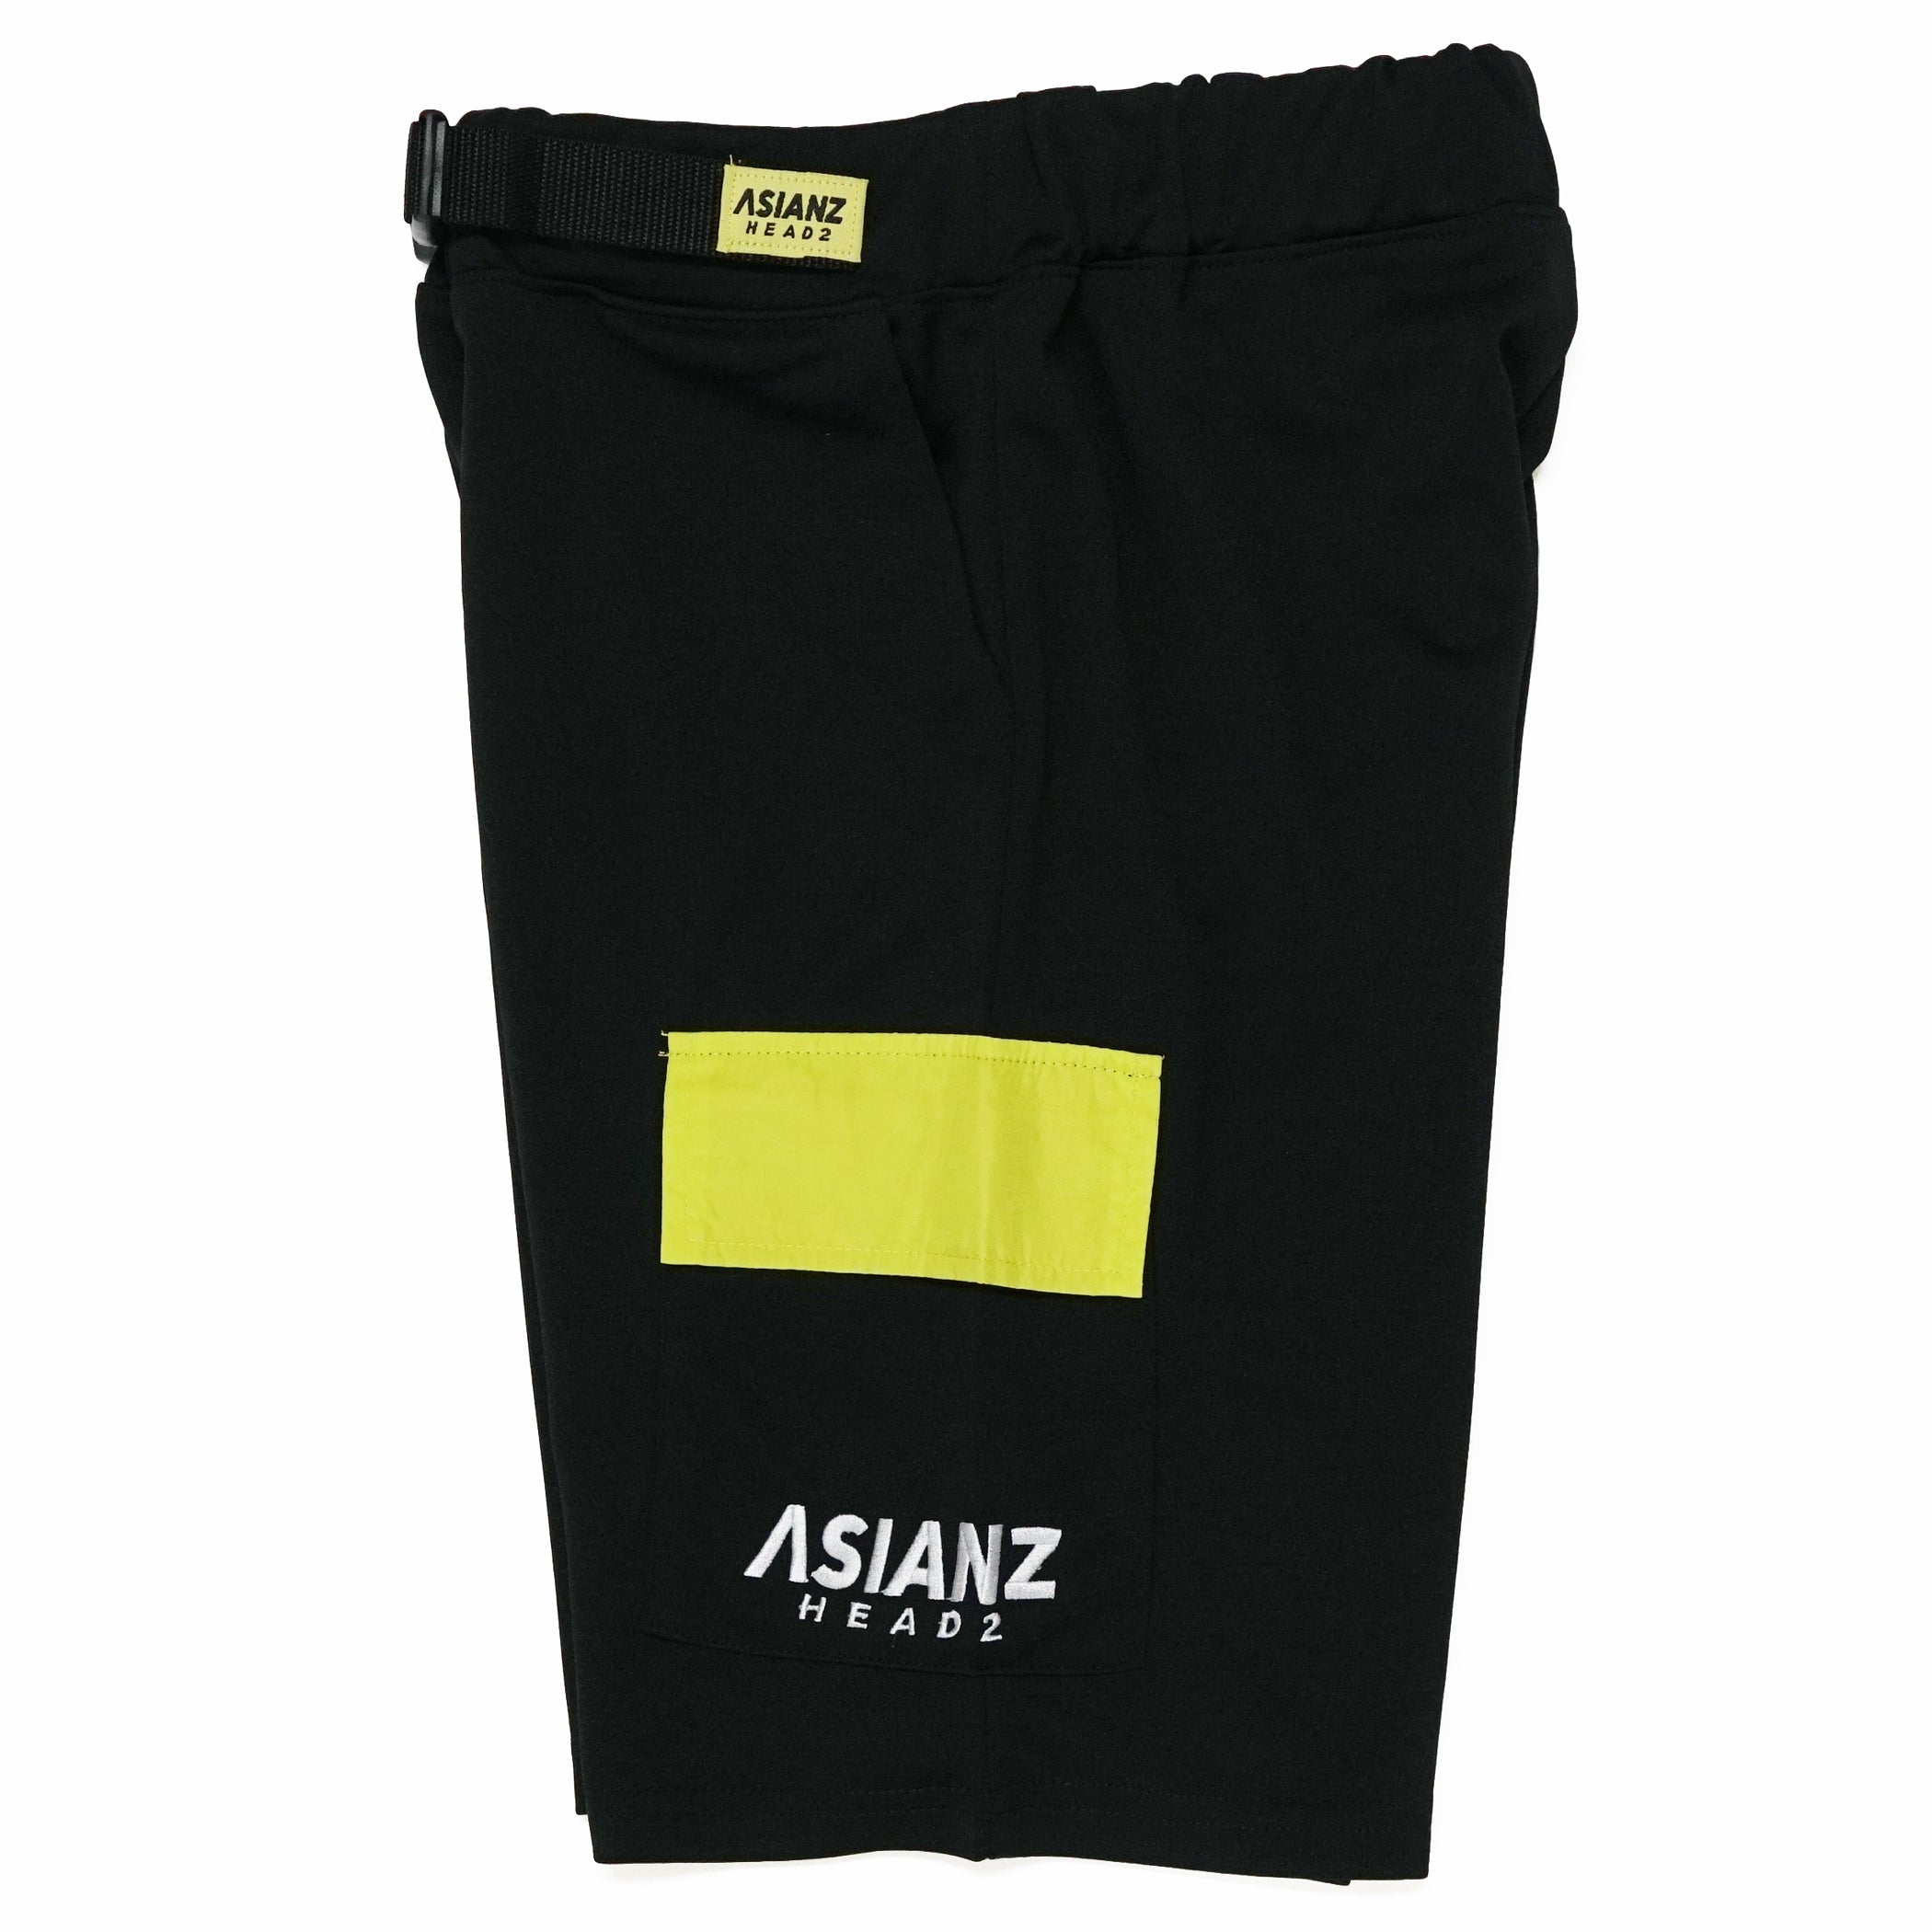 (セール商品) ASIANZ HEAD2 サイドポケットハーフパンツ